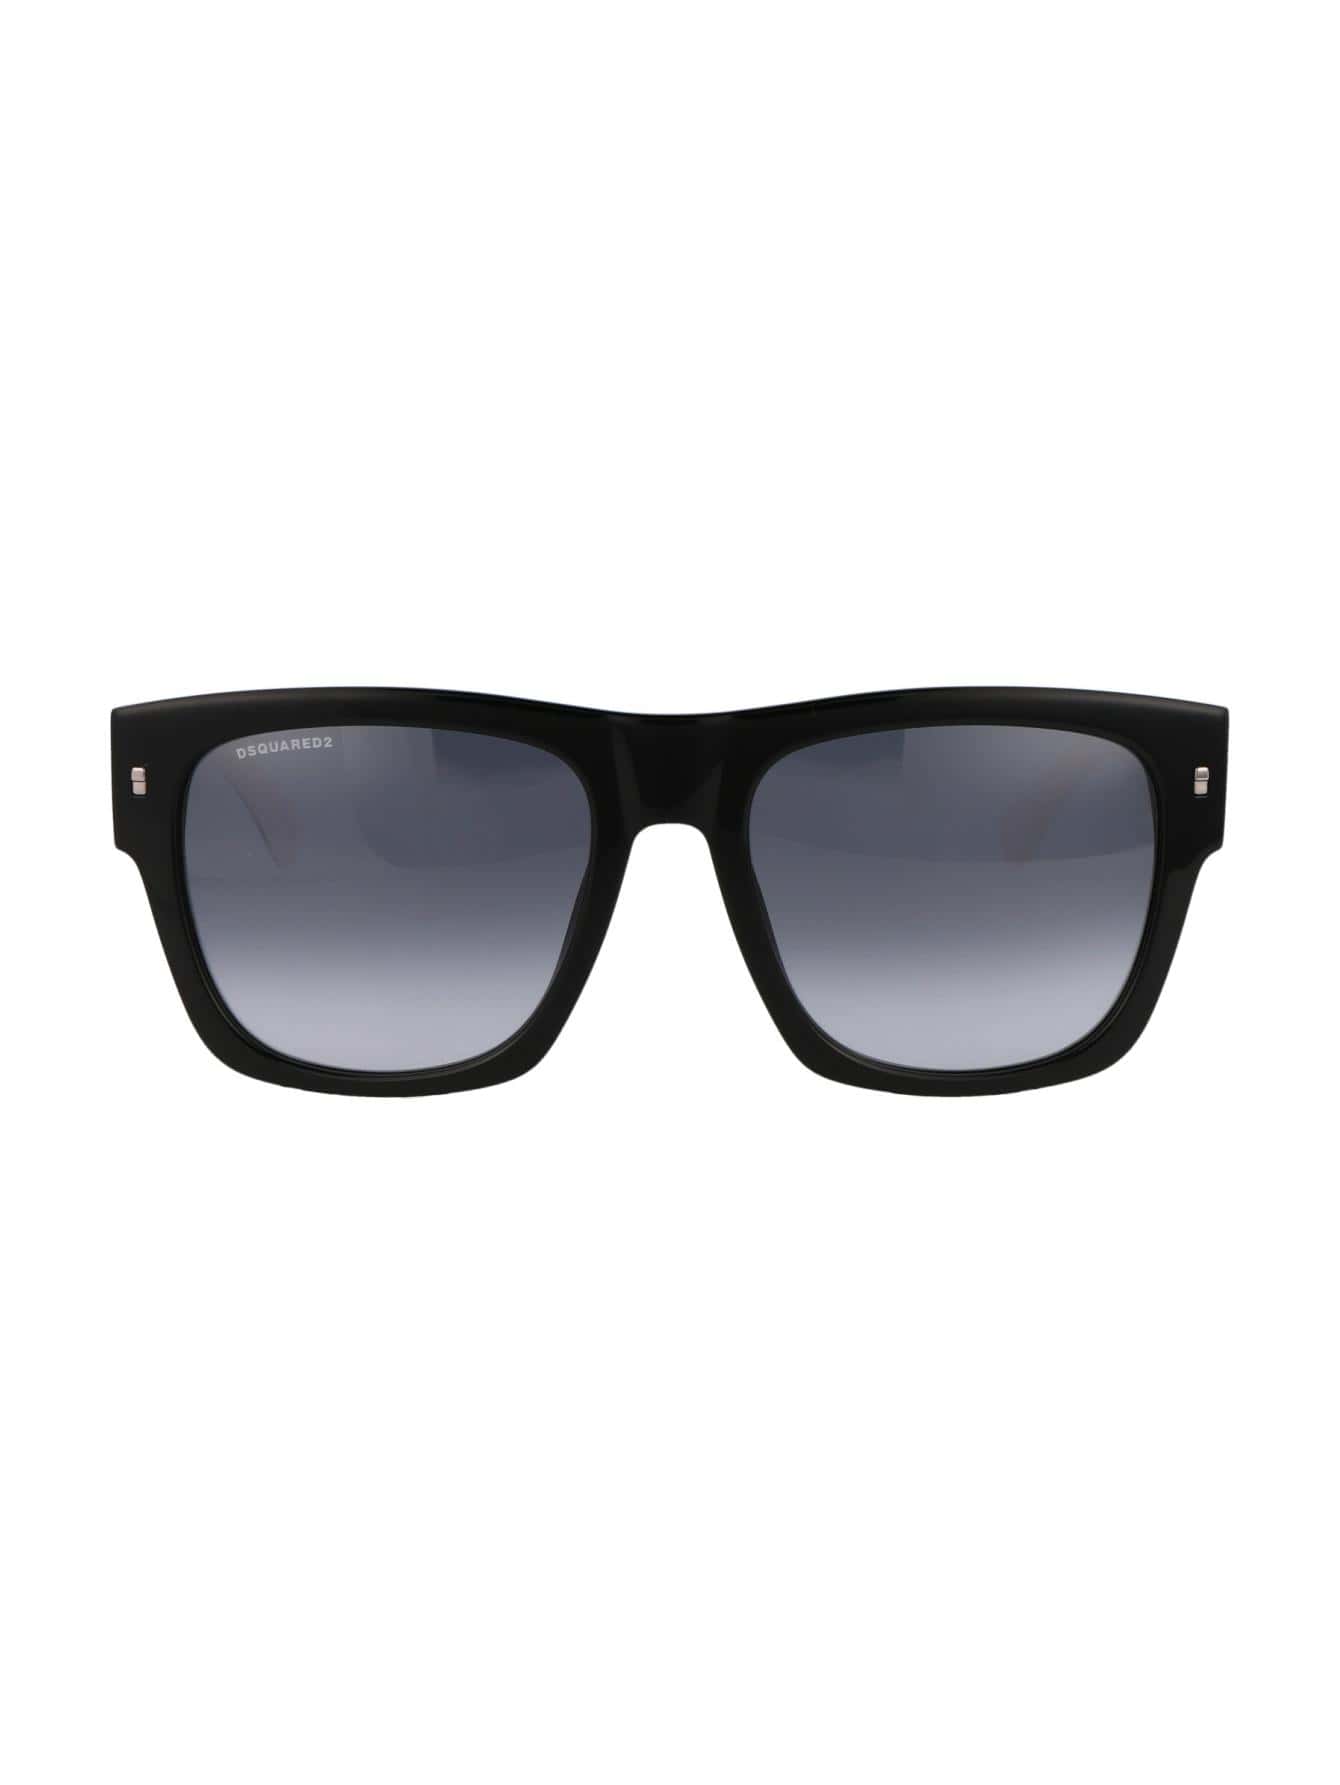 Мужские солнцезащитные очки Dsquared2 DECOR ICON0004/S80S9O, многоцветный